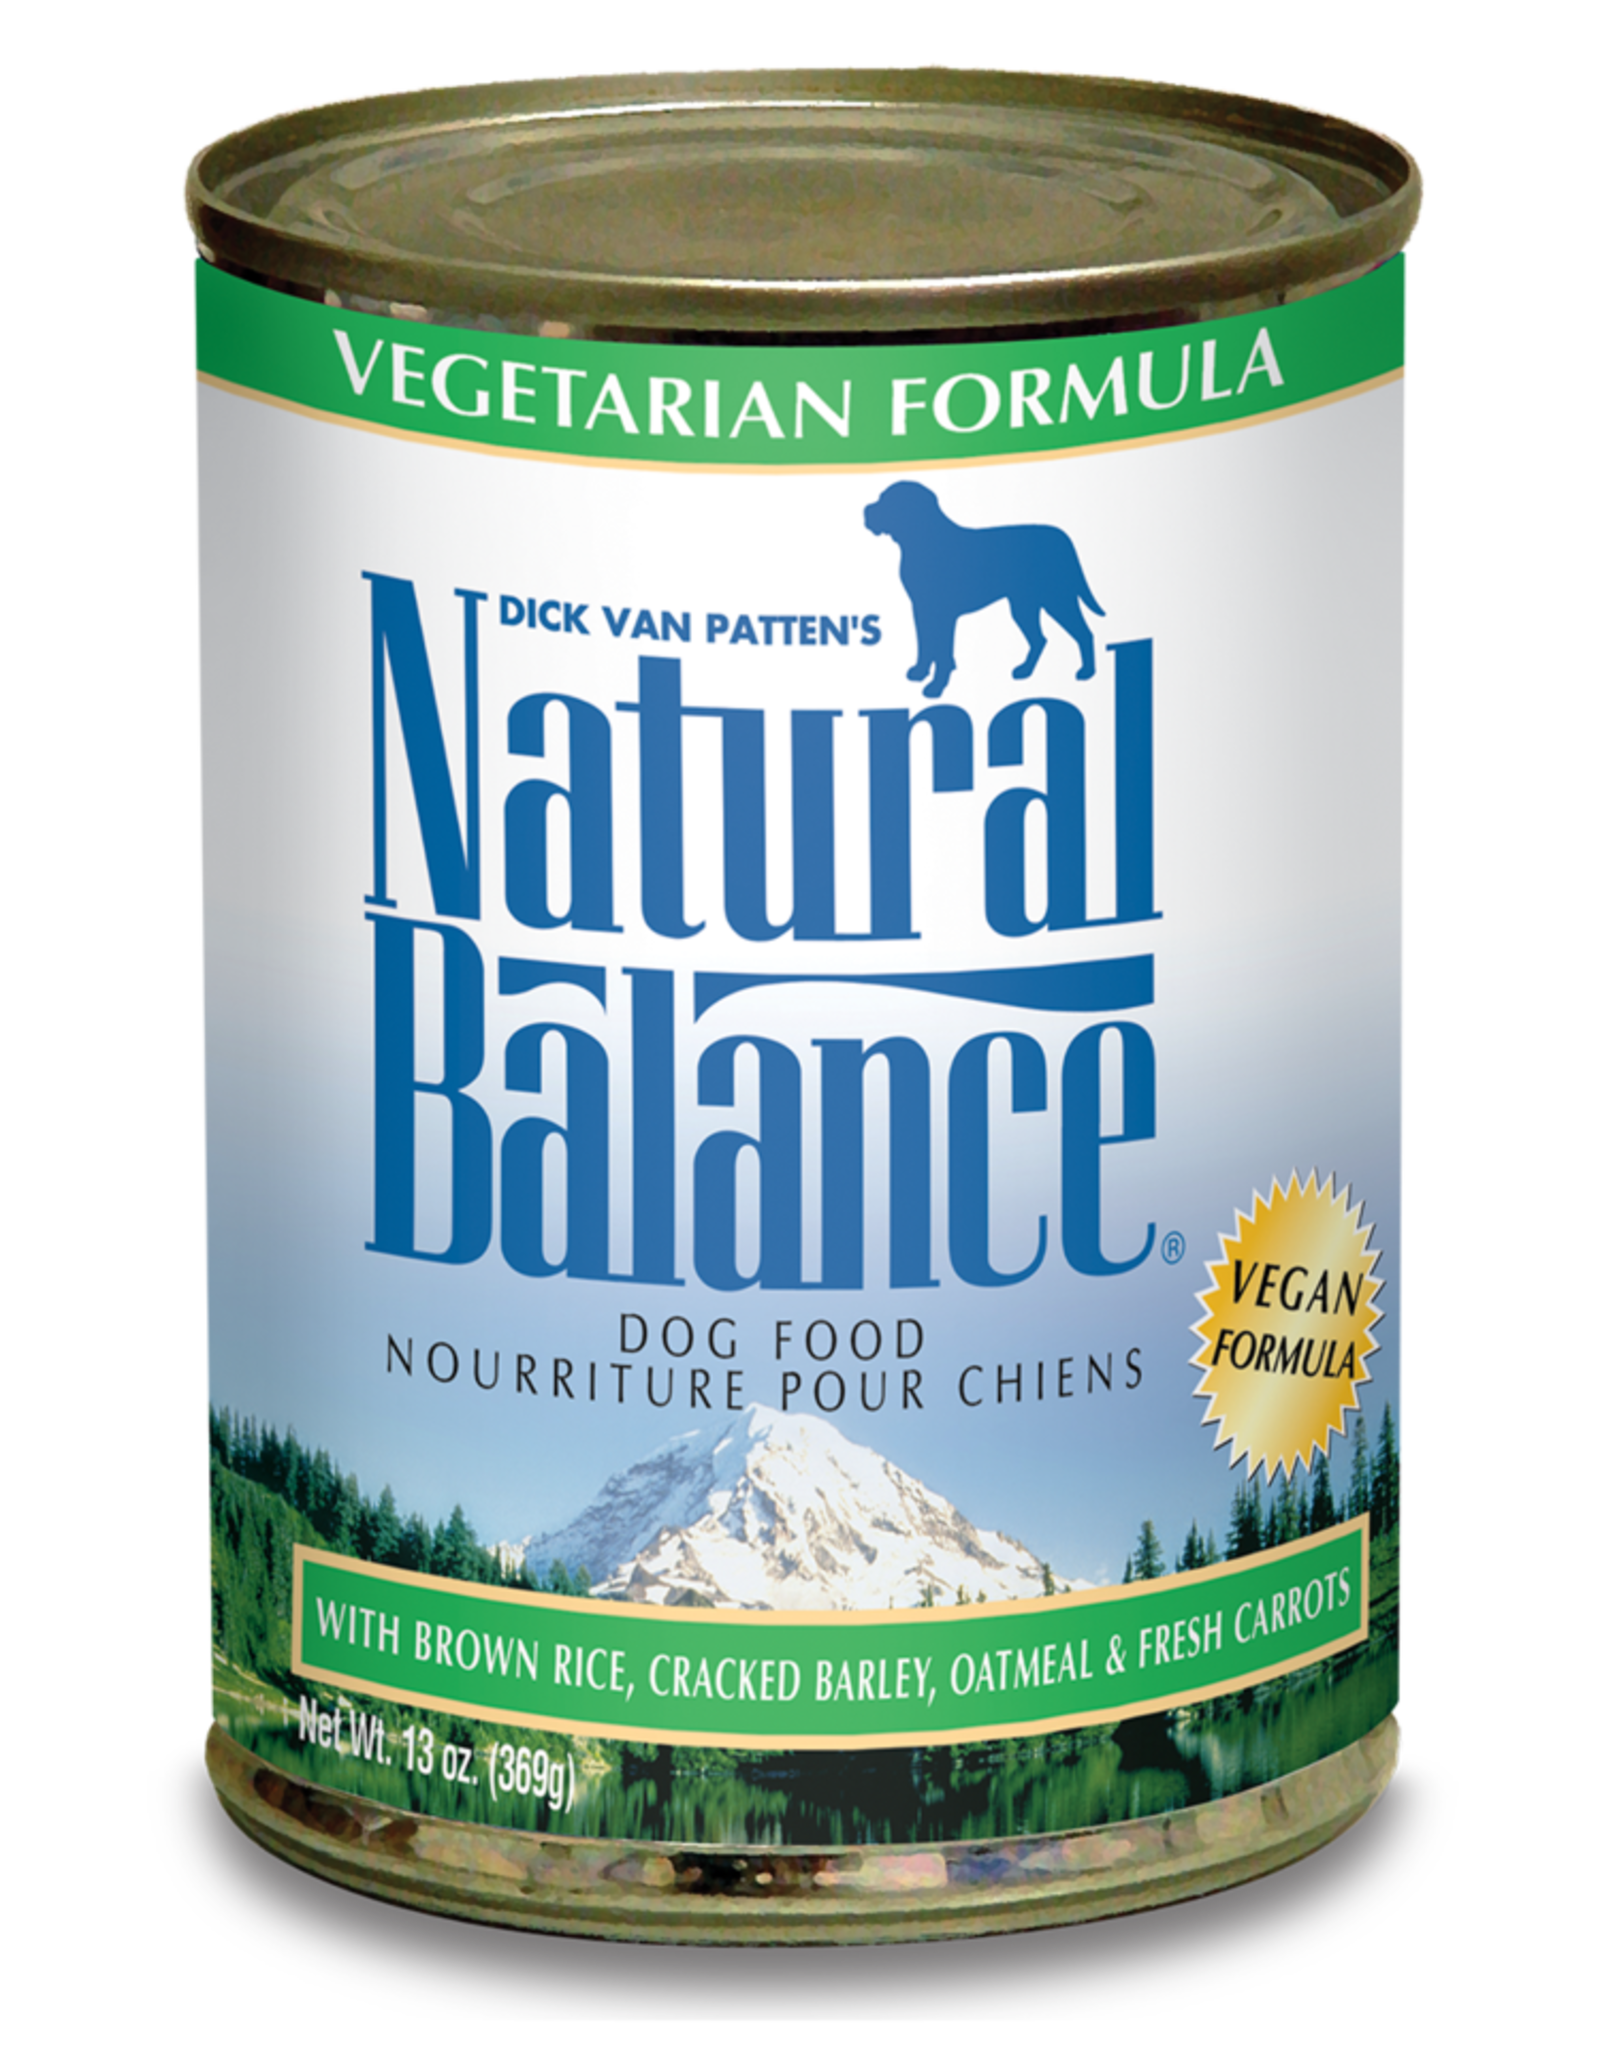 NATURAL BALANCE PET FOODS, INC NATURAL BALANCE DOG VEGETARIAN CAN 13OZ CASE OF 12